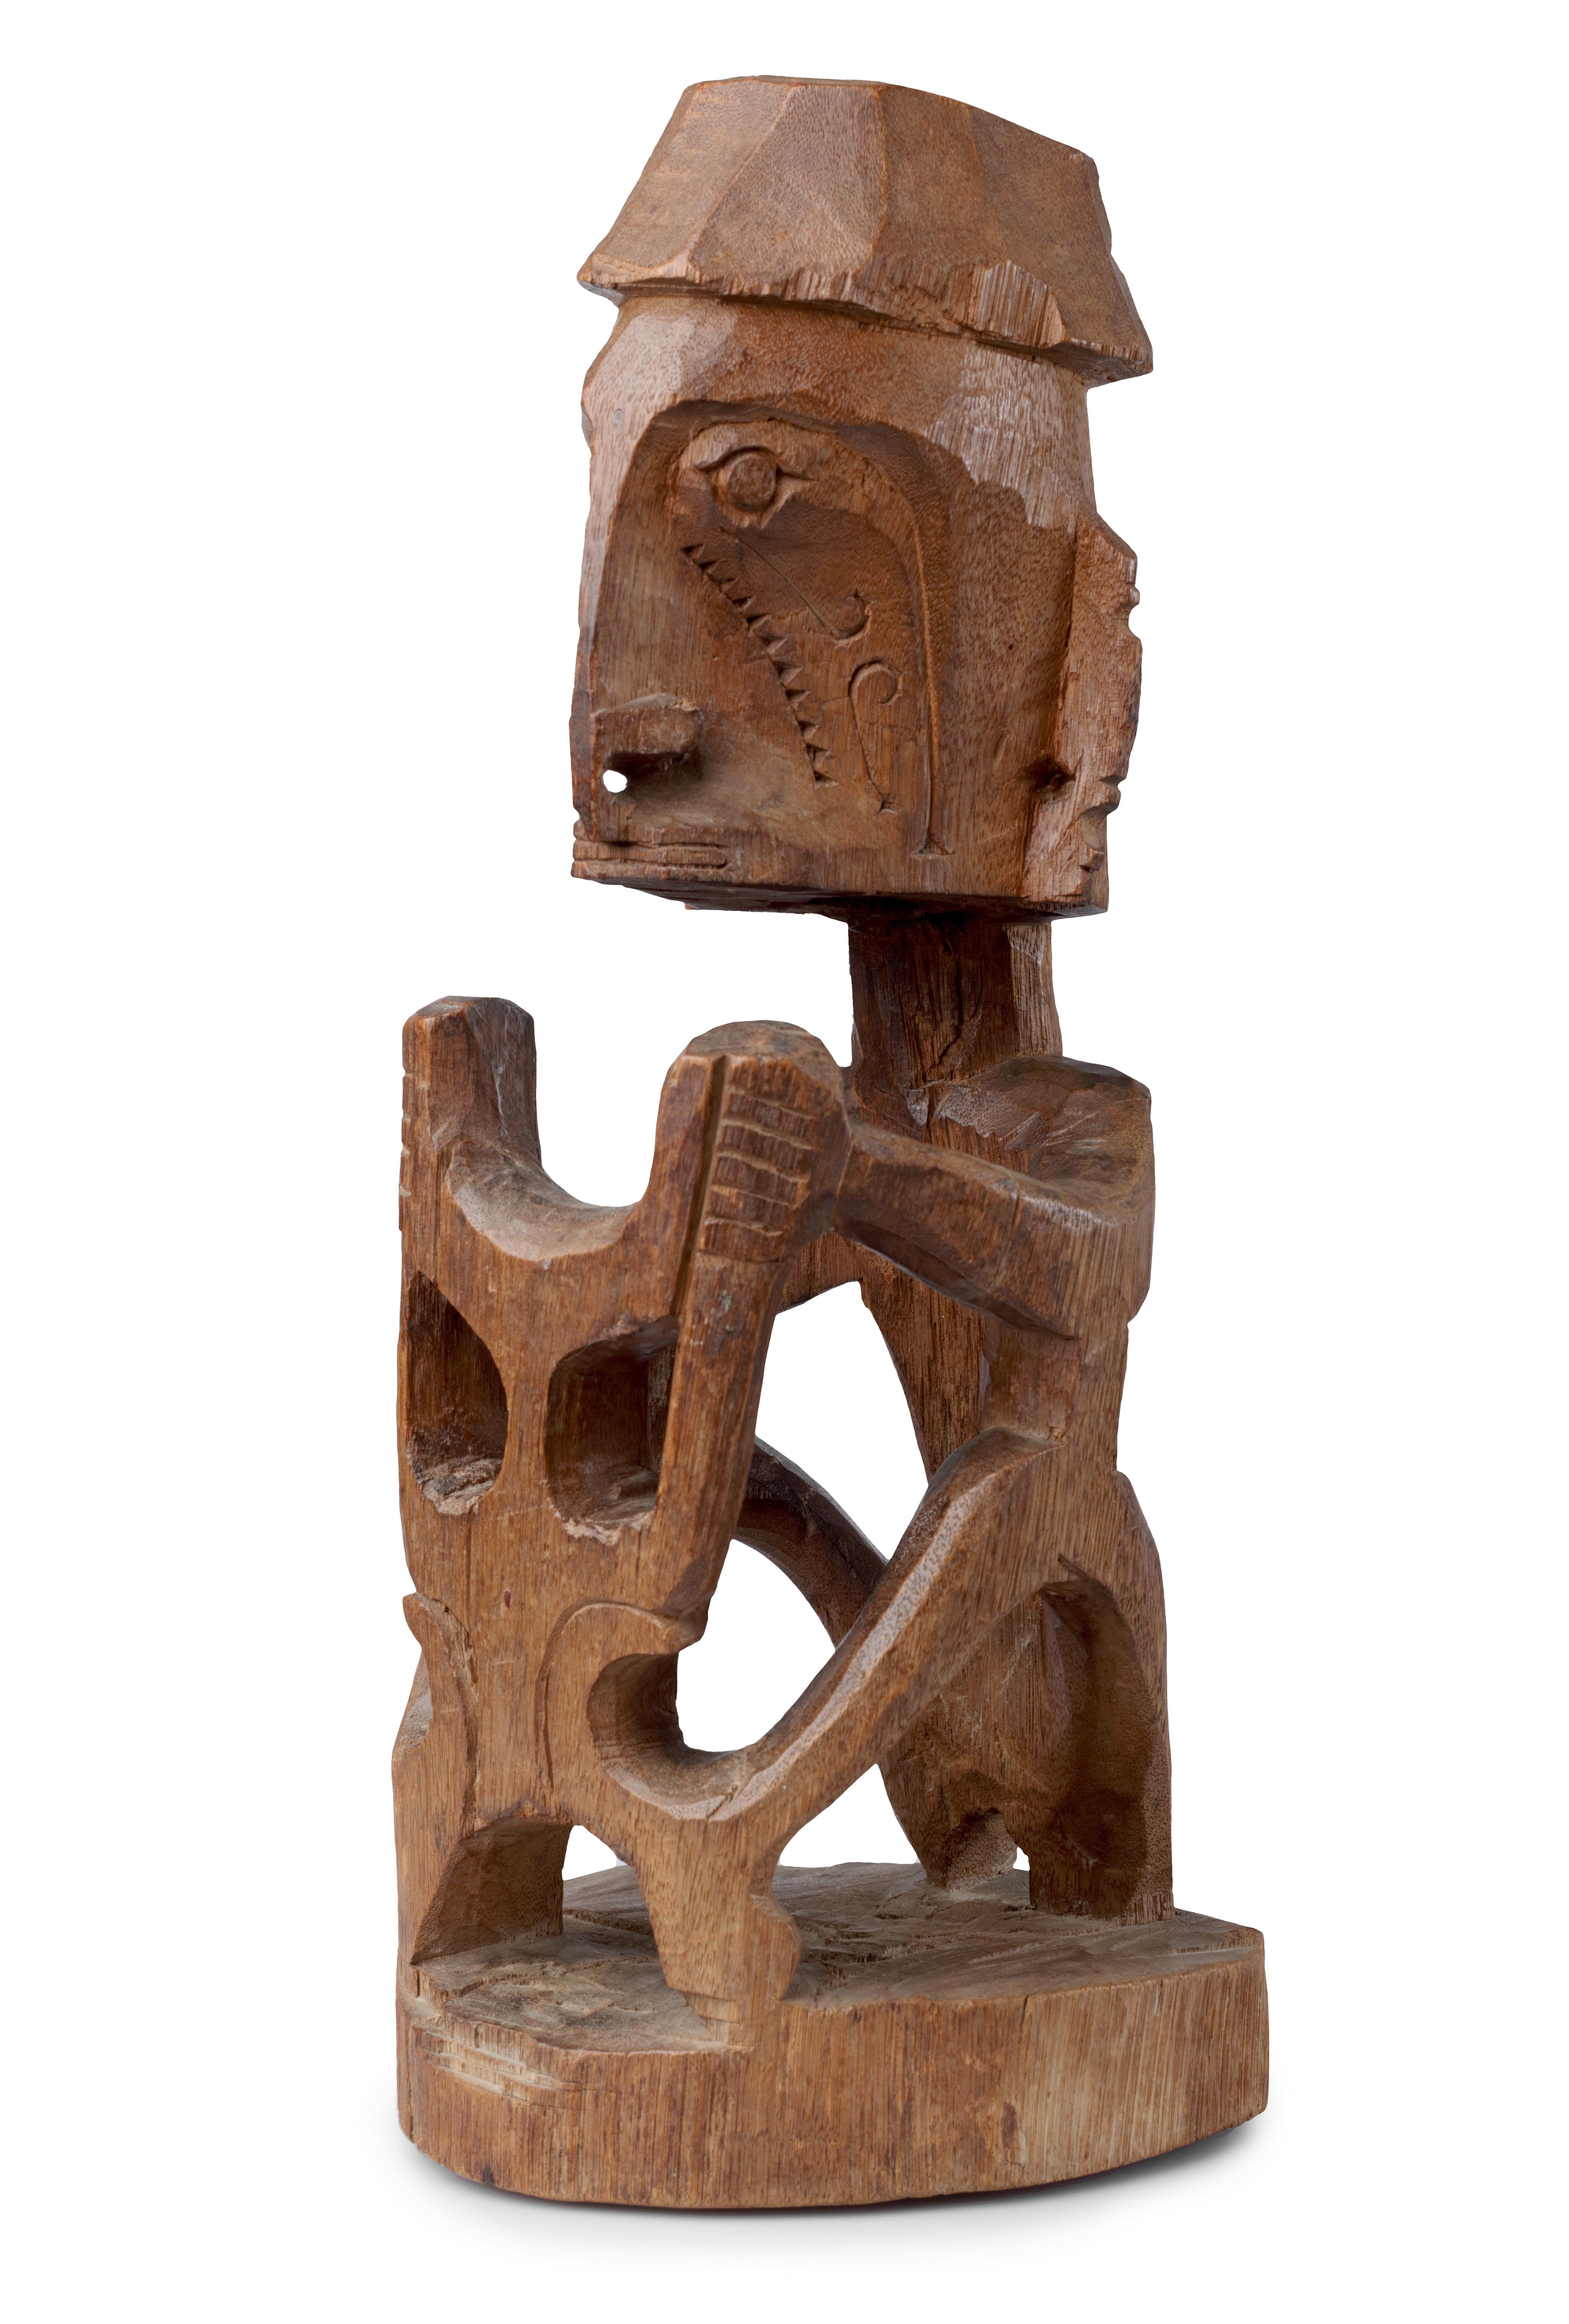 Figurine en bois de Papouasie représentant un Korwar

Nord-ouest de l'Irian Jaya, région de Vogelkop, baie côtière de Geelvink, actuelle baie de Cenderawasih, début du 20e siècle

Le Korwar assis tient devant lui un 